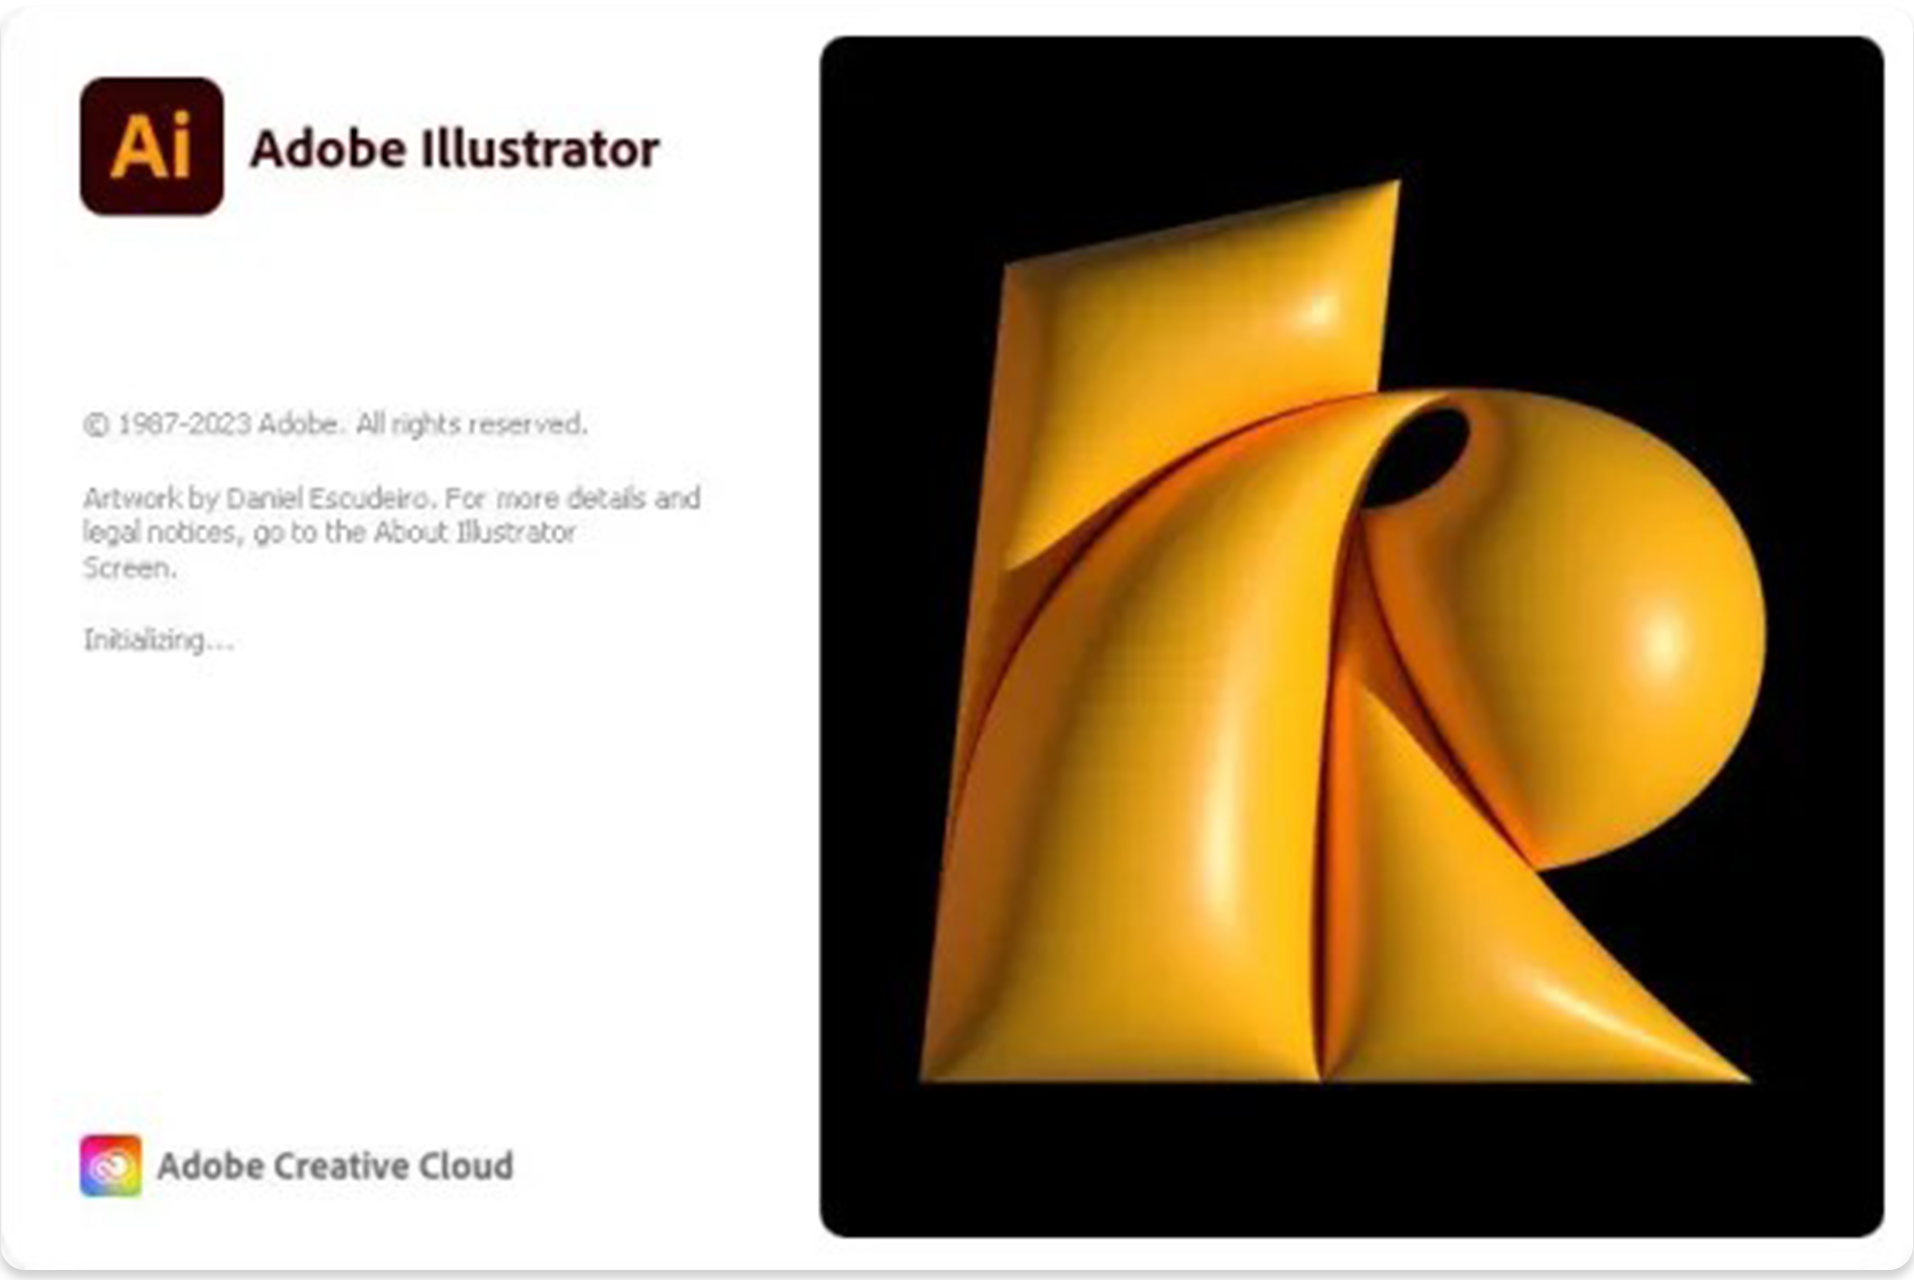 Adobe Illustrator คือ โปรแกรมออกแบบด้าน Graphic Design แบบเวกเตอร์มาตรฐานอุตสาหกรรม ที่เน้นการสร้างงานจากการวาด การสร้างภาพกราฟิกผ่านจอคอมพิวเตอร์ เป็นหนึ่งในสุดยอดโปรแกรมด้านการออกแบบที่นิยมใช้